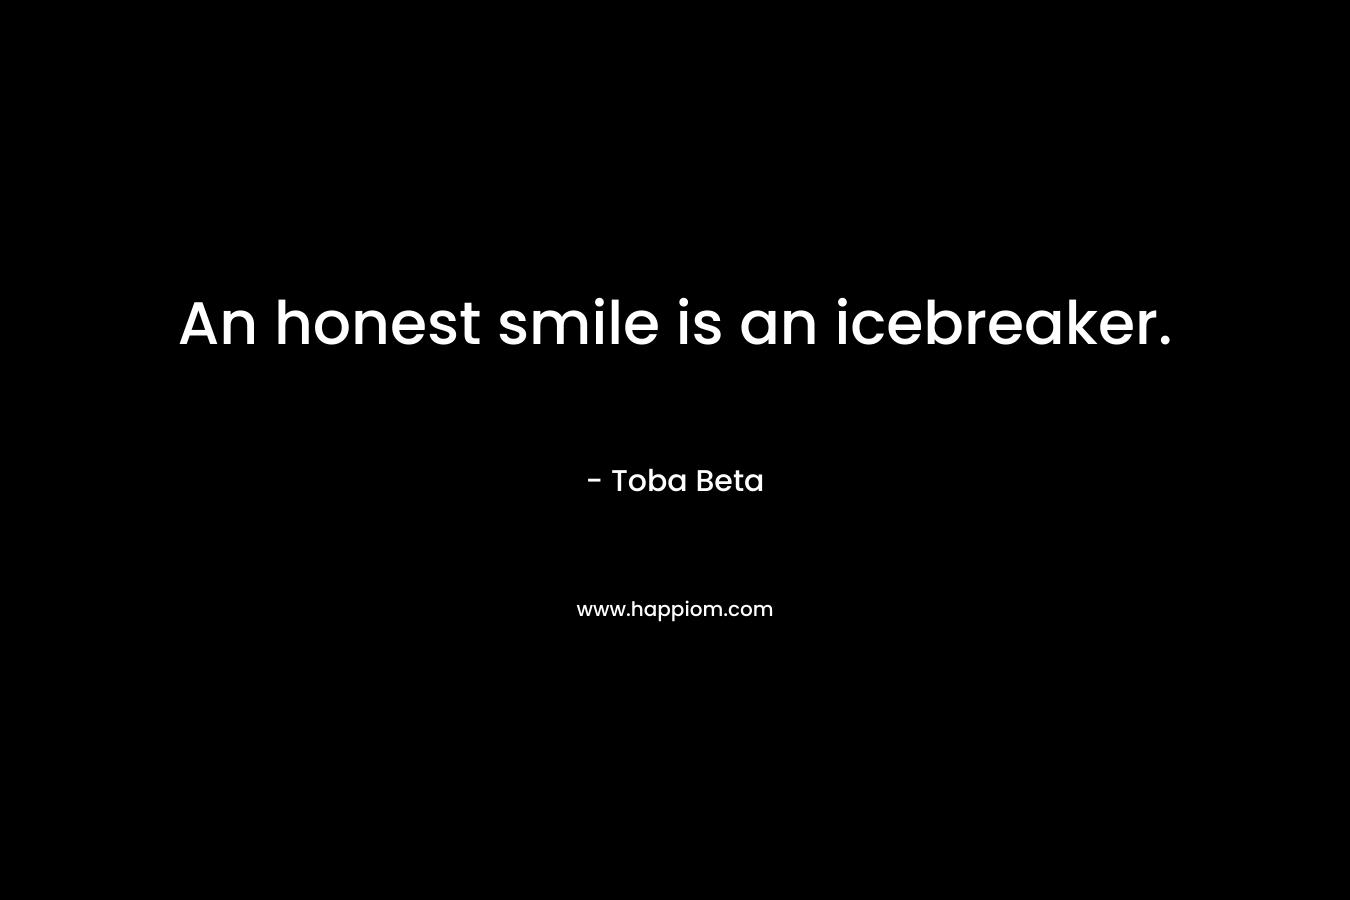 An honest smile is an icebreaker. – Toba Beta